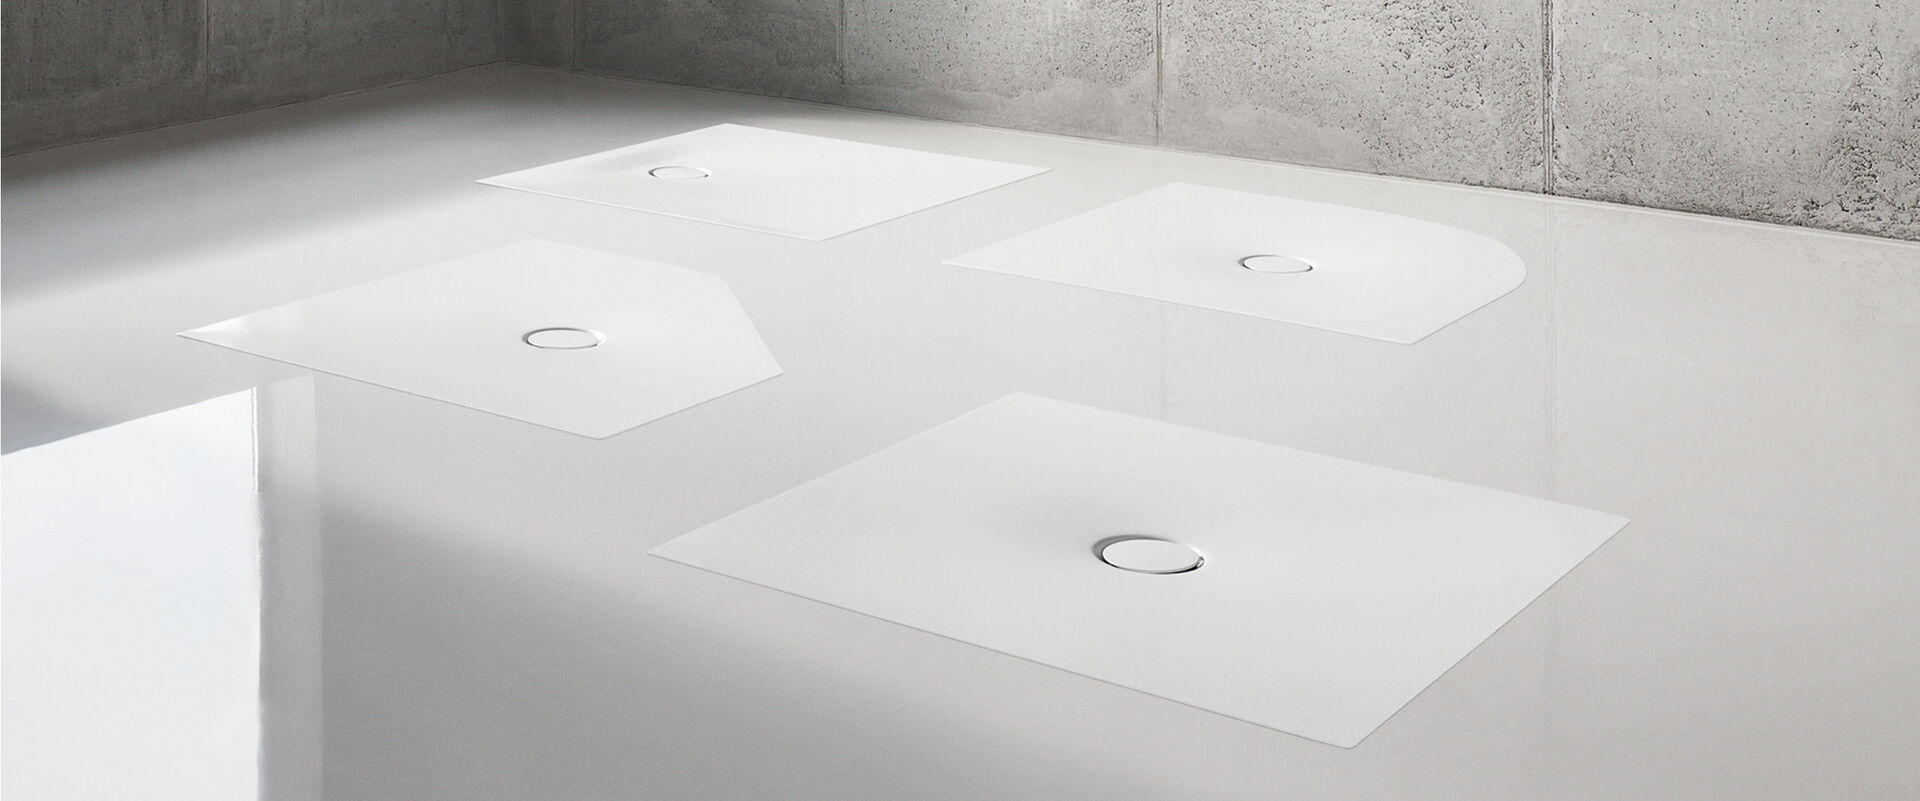 Grauer Boden, auf dem vier weiße BetteFloor Duschflächen von Bette in unterschiedlichen Formen eingelassen sind.